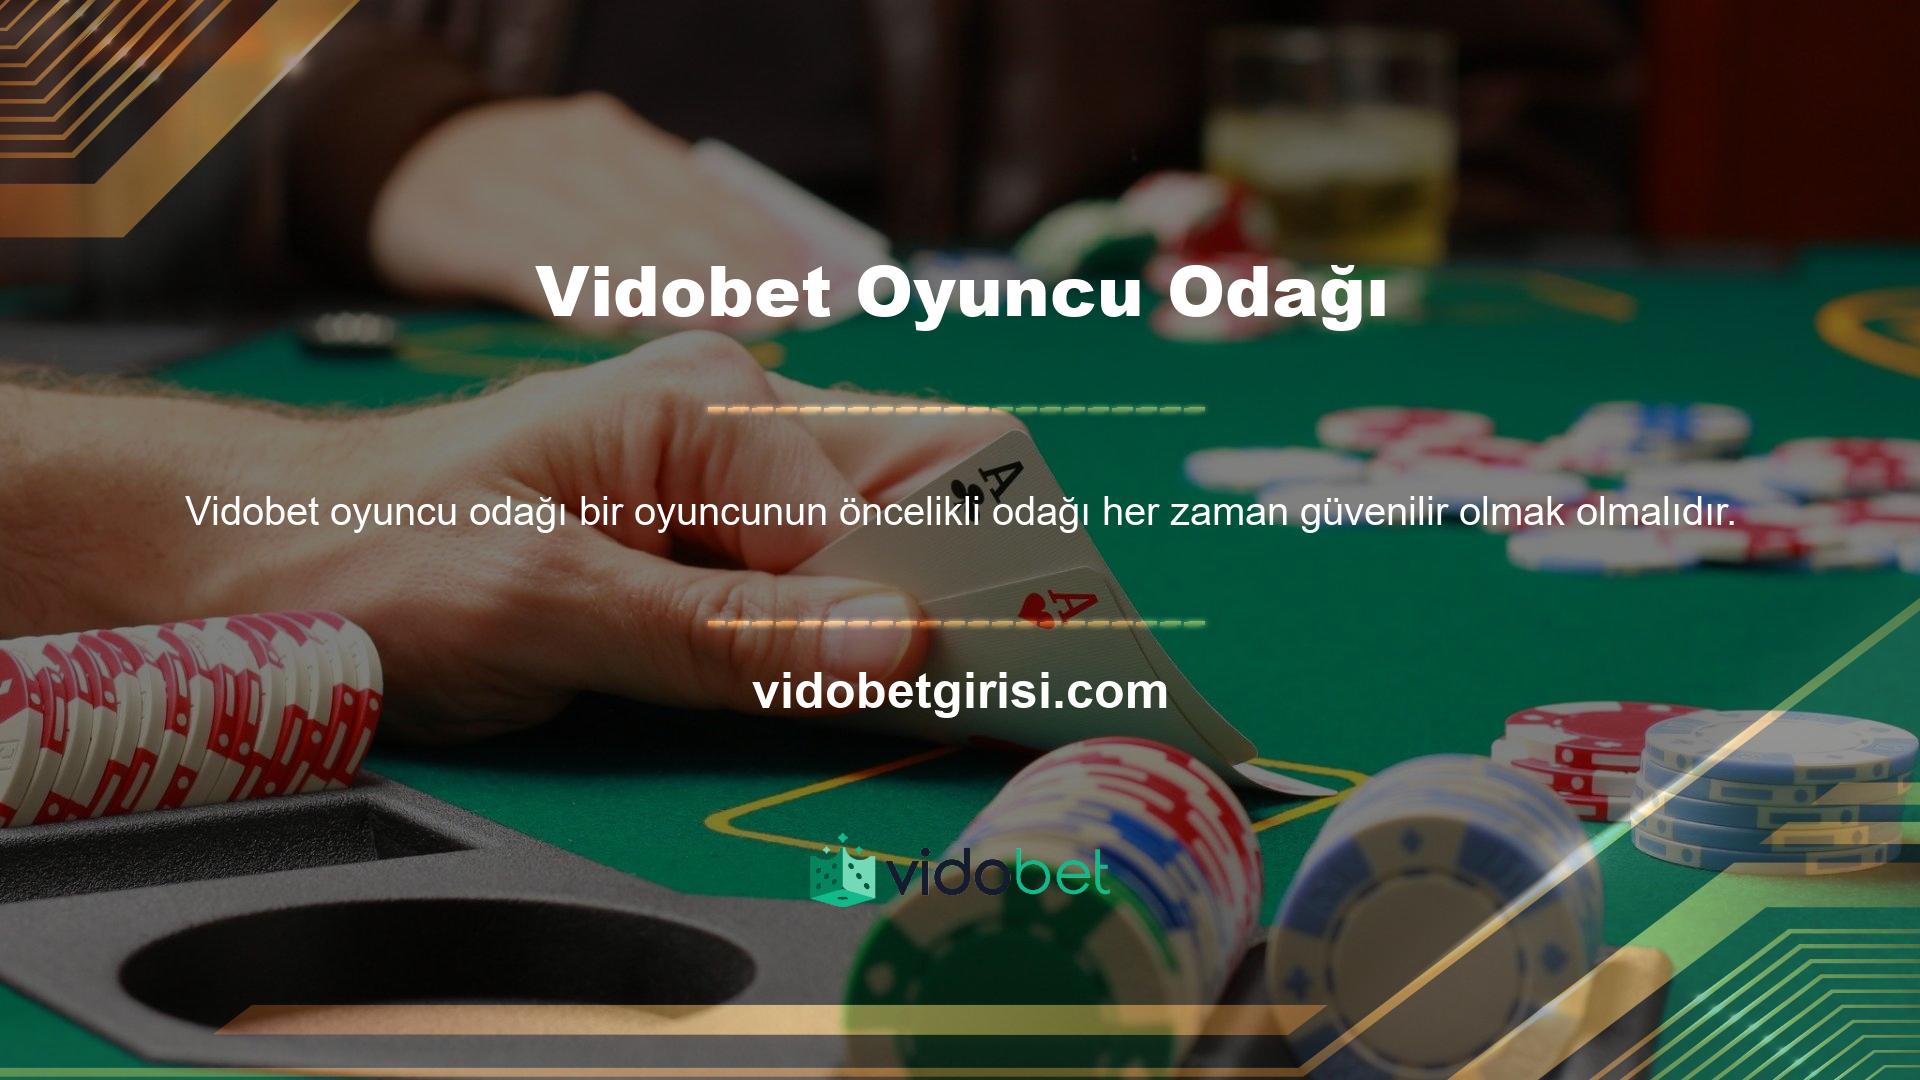 Vidobet web sitesi, bahis faaliyetlerine katılmaktan hoşlanan kişilere büyük değer vermektedir